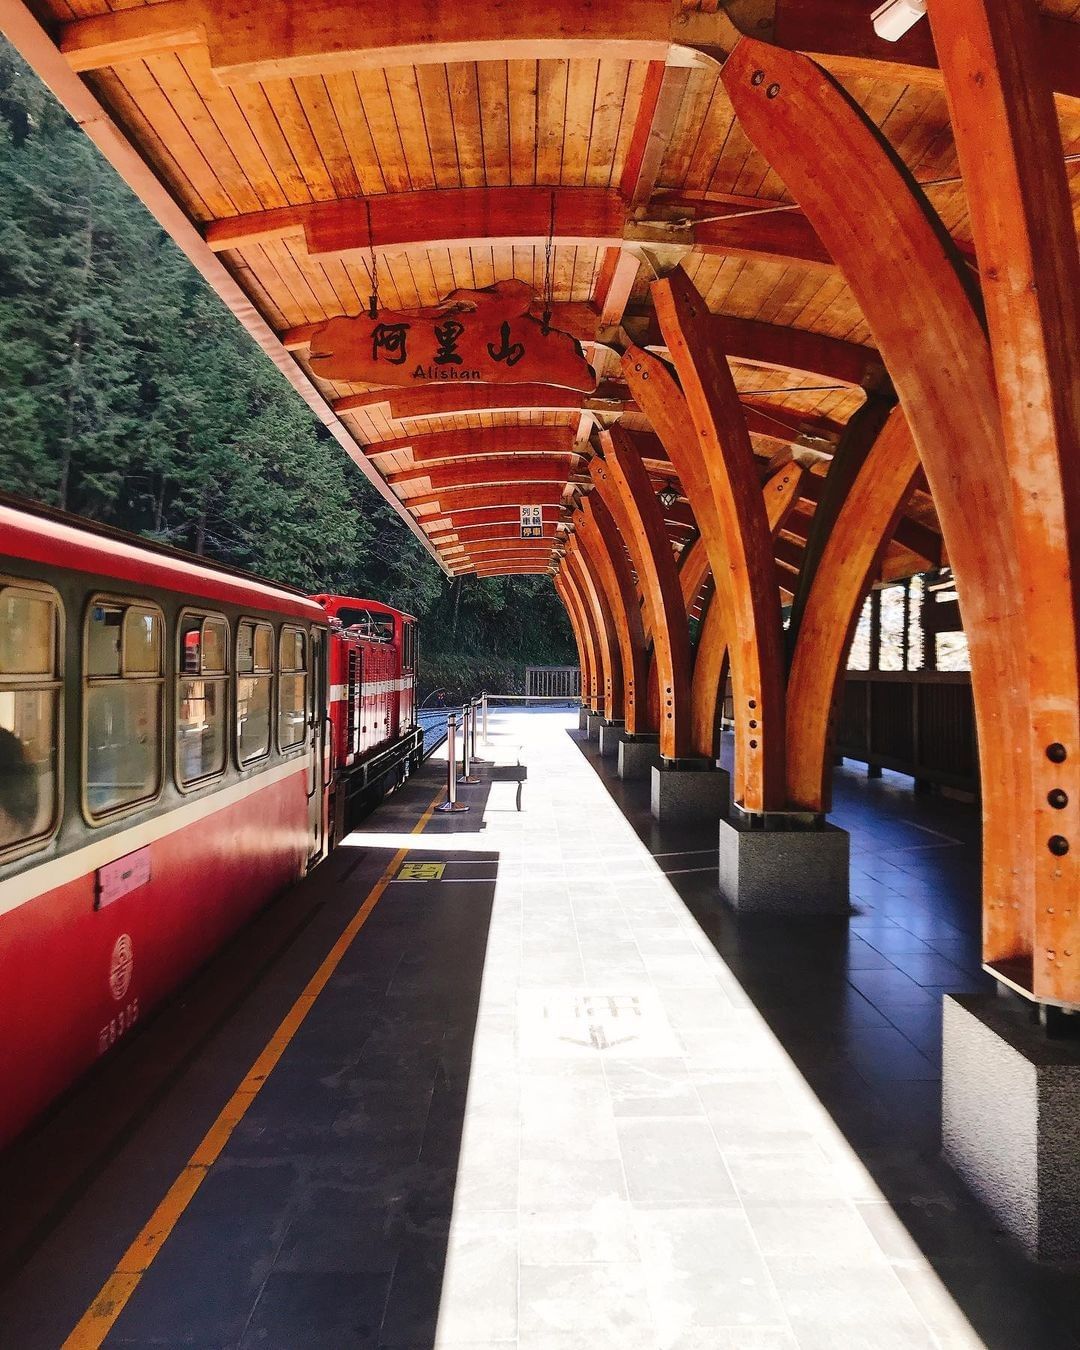 靜謐的阿里山火車站乘載著過往林業歷史在這古色古香的車站，開啟阿里山之旅吧！-⠀⠀⠀⠀⠀⠀⠀⠀⠀⠀⠀感謝 @hitorigurash...